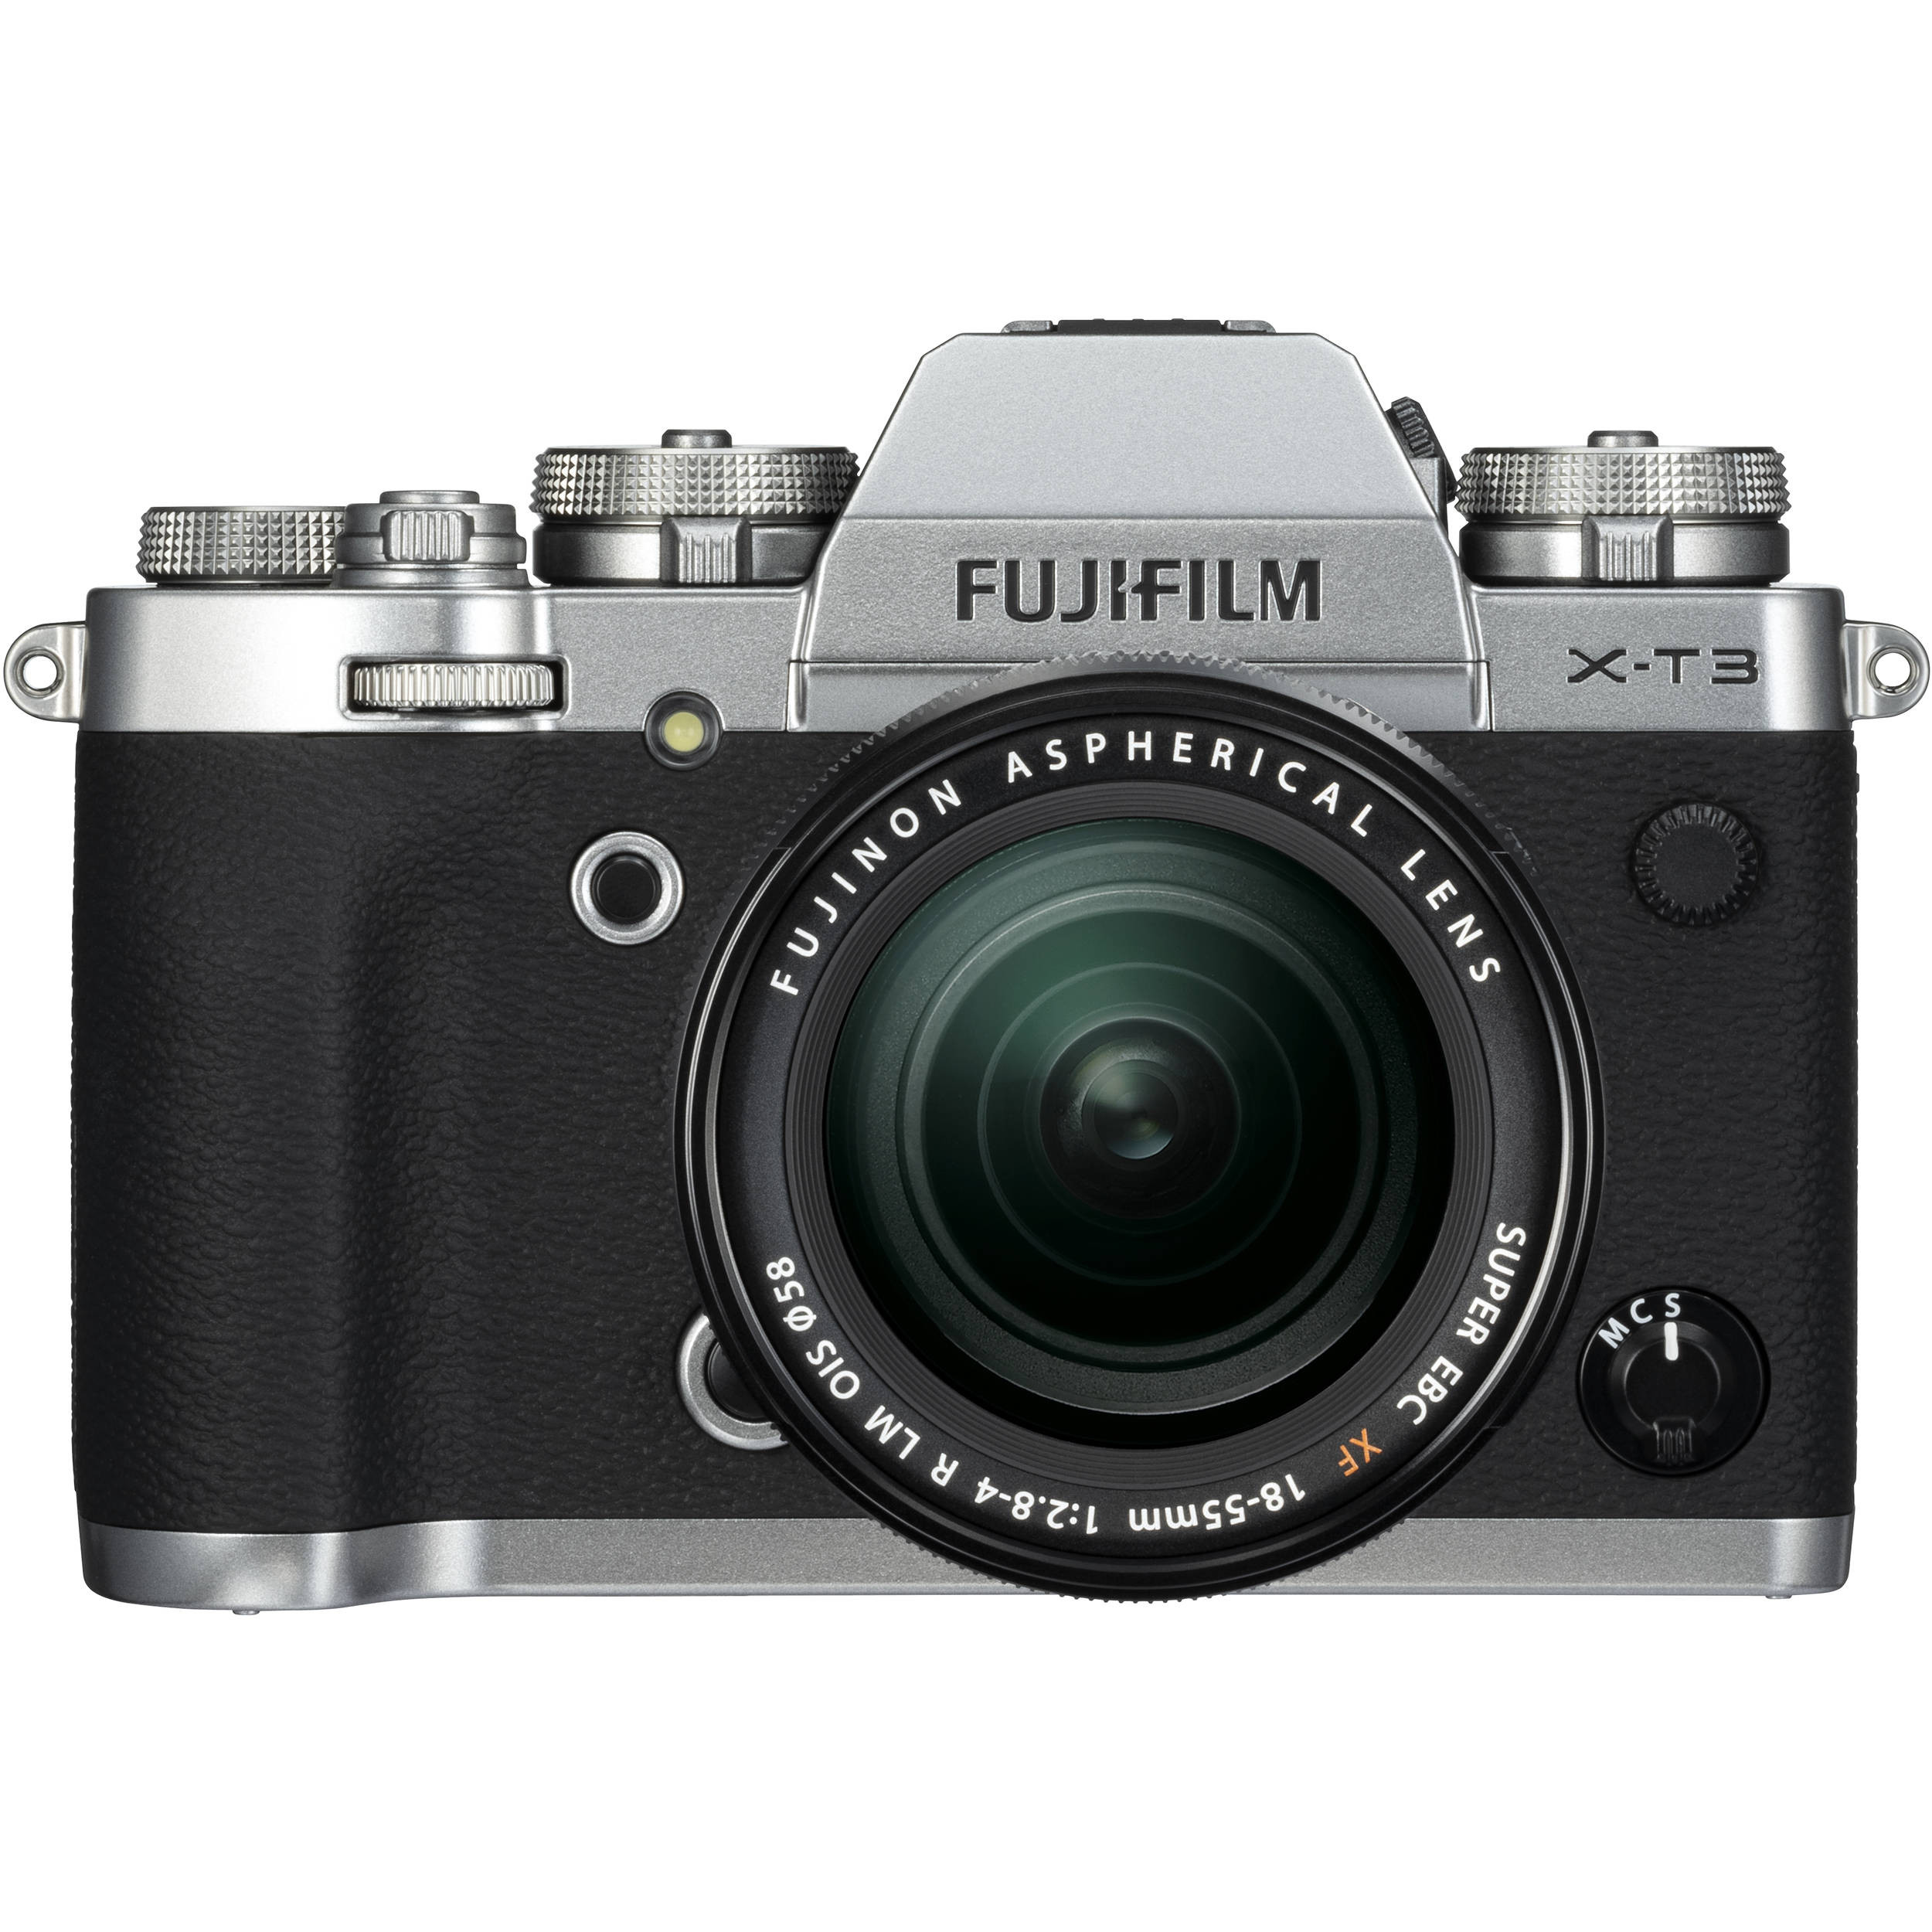 Fujifilm X-T3 Kit (XF 18-55mm f/2.8-4 R LM OIS) Silver